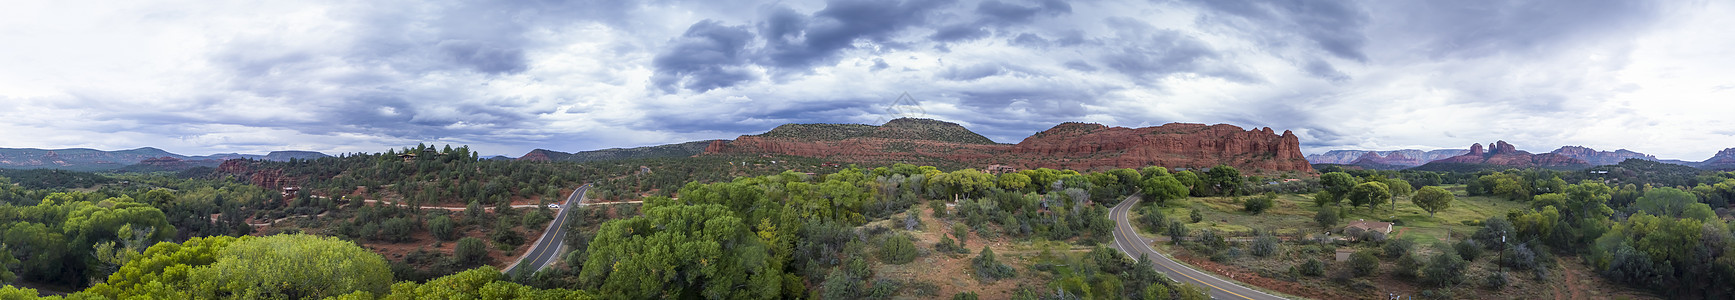 美国西南州树木荒野天空晴天岩石地质学编队橙子沙漠顶峰图片